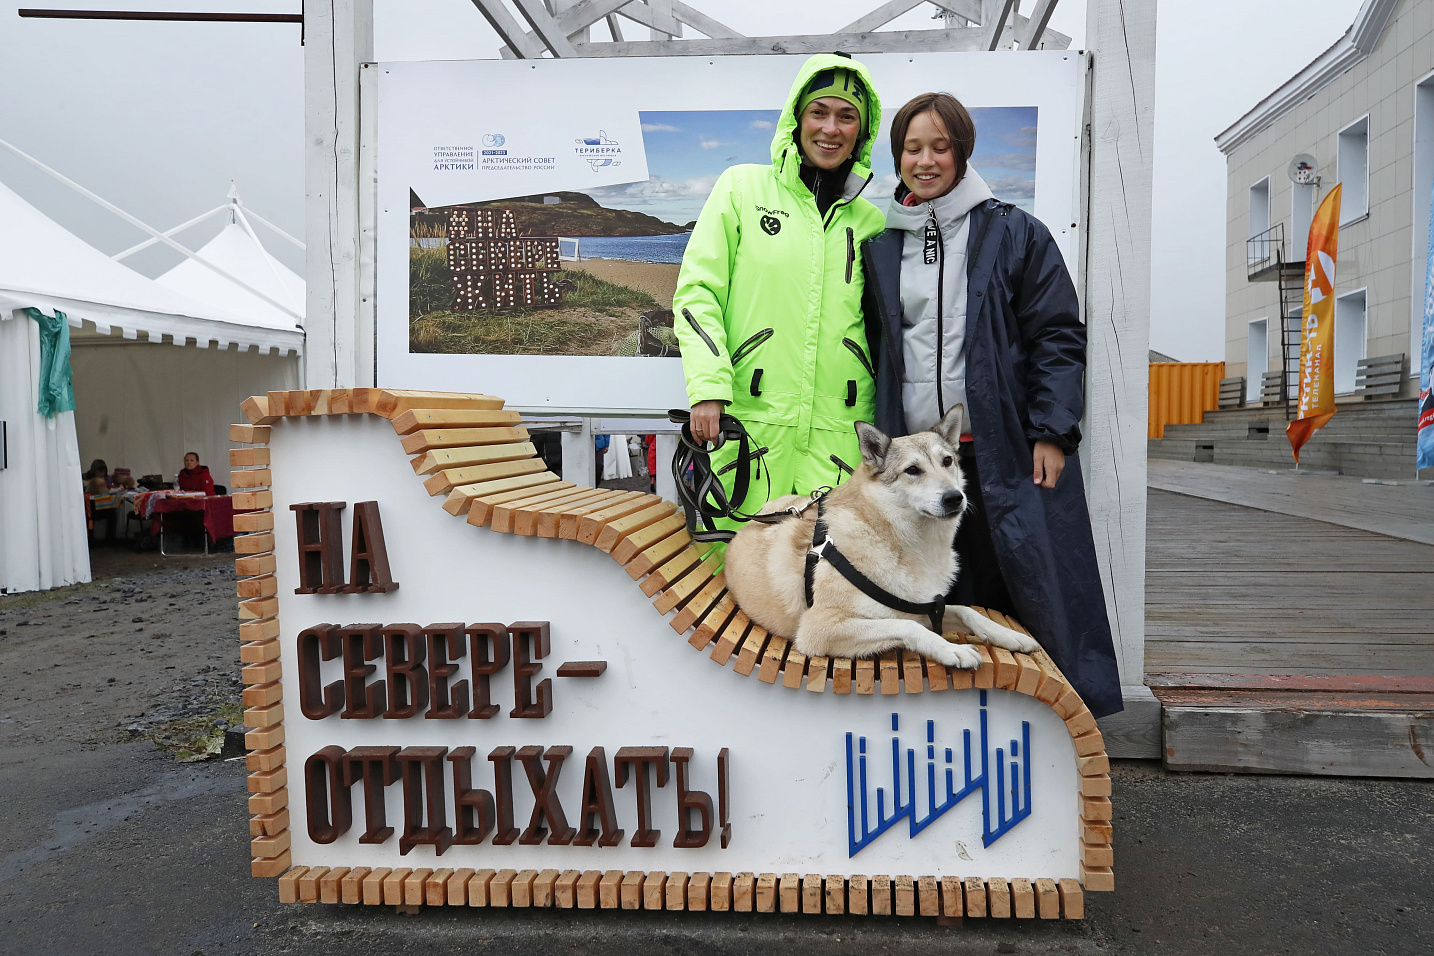 VII Арктический фестиваль «Териберка» представил  деловую и культурную программу